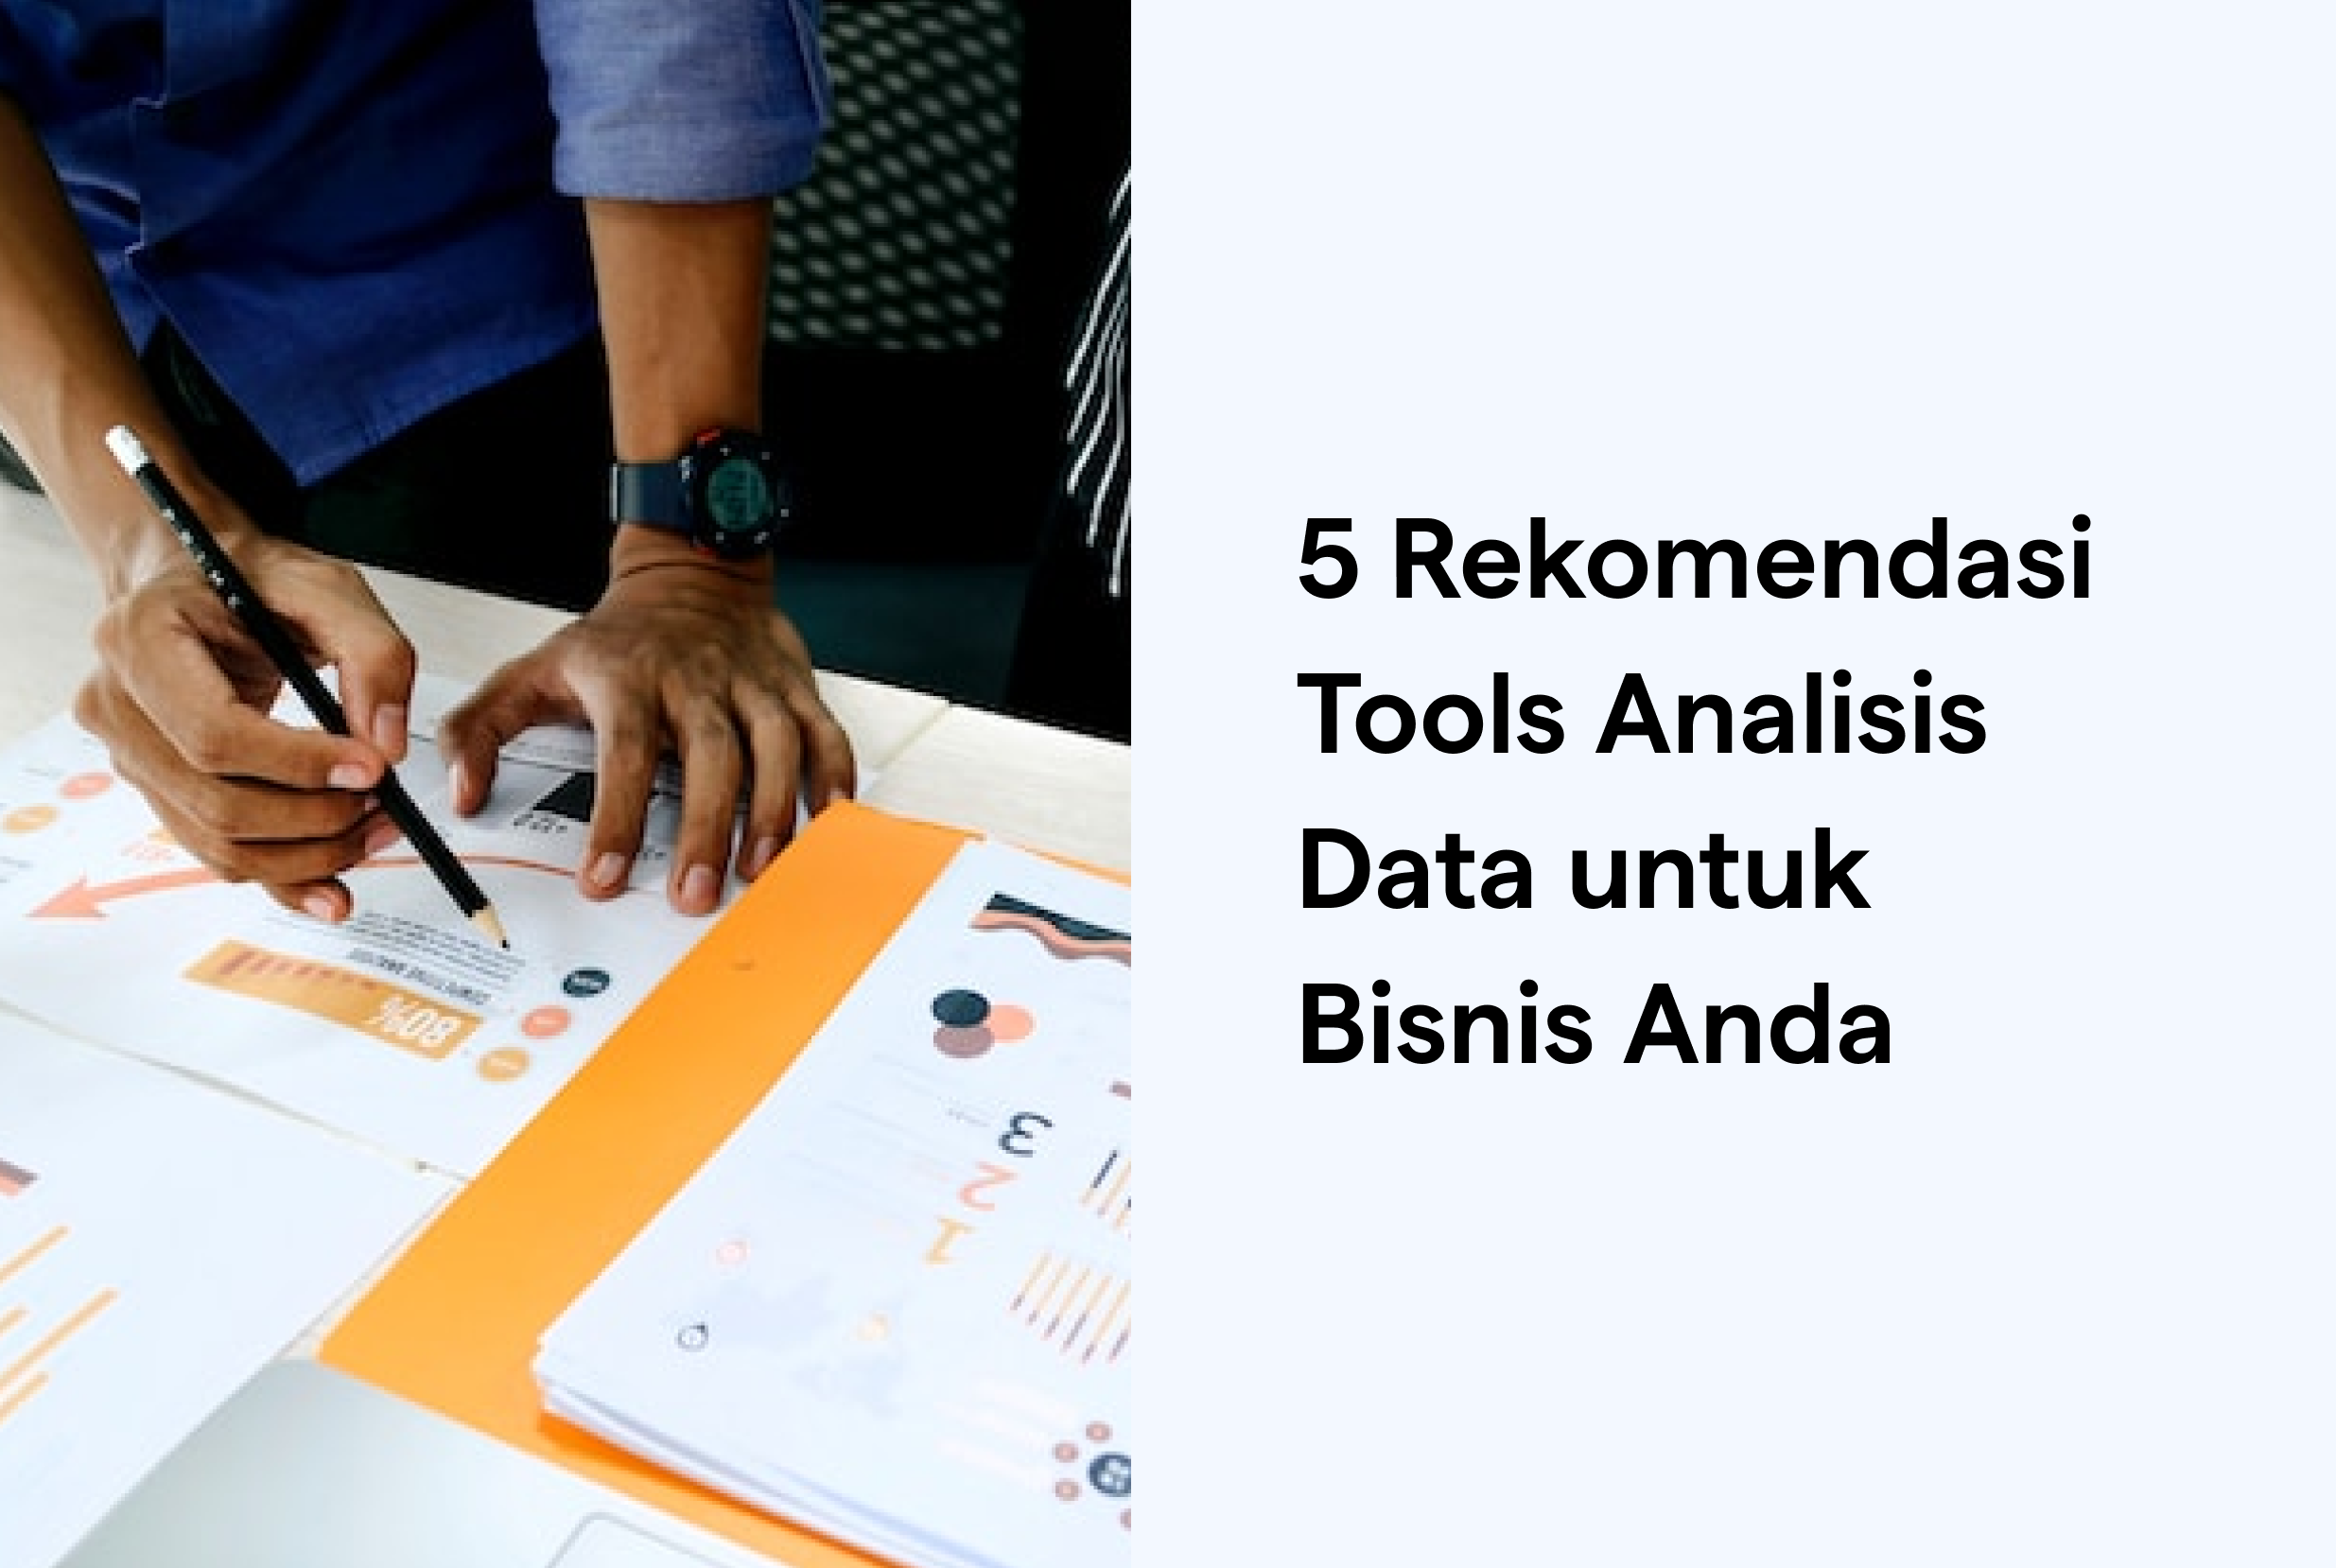 5 Rekomendasi Tools Analisis Data untuk Bisnis